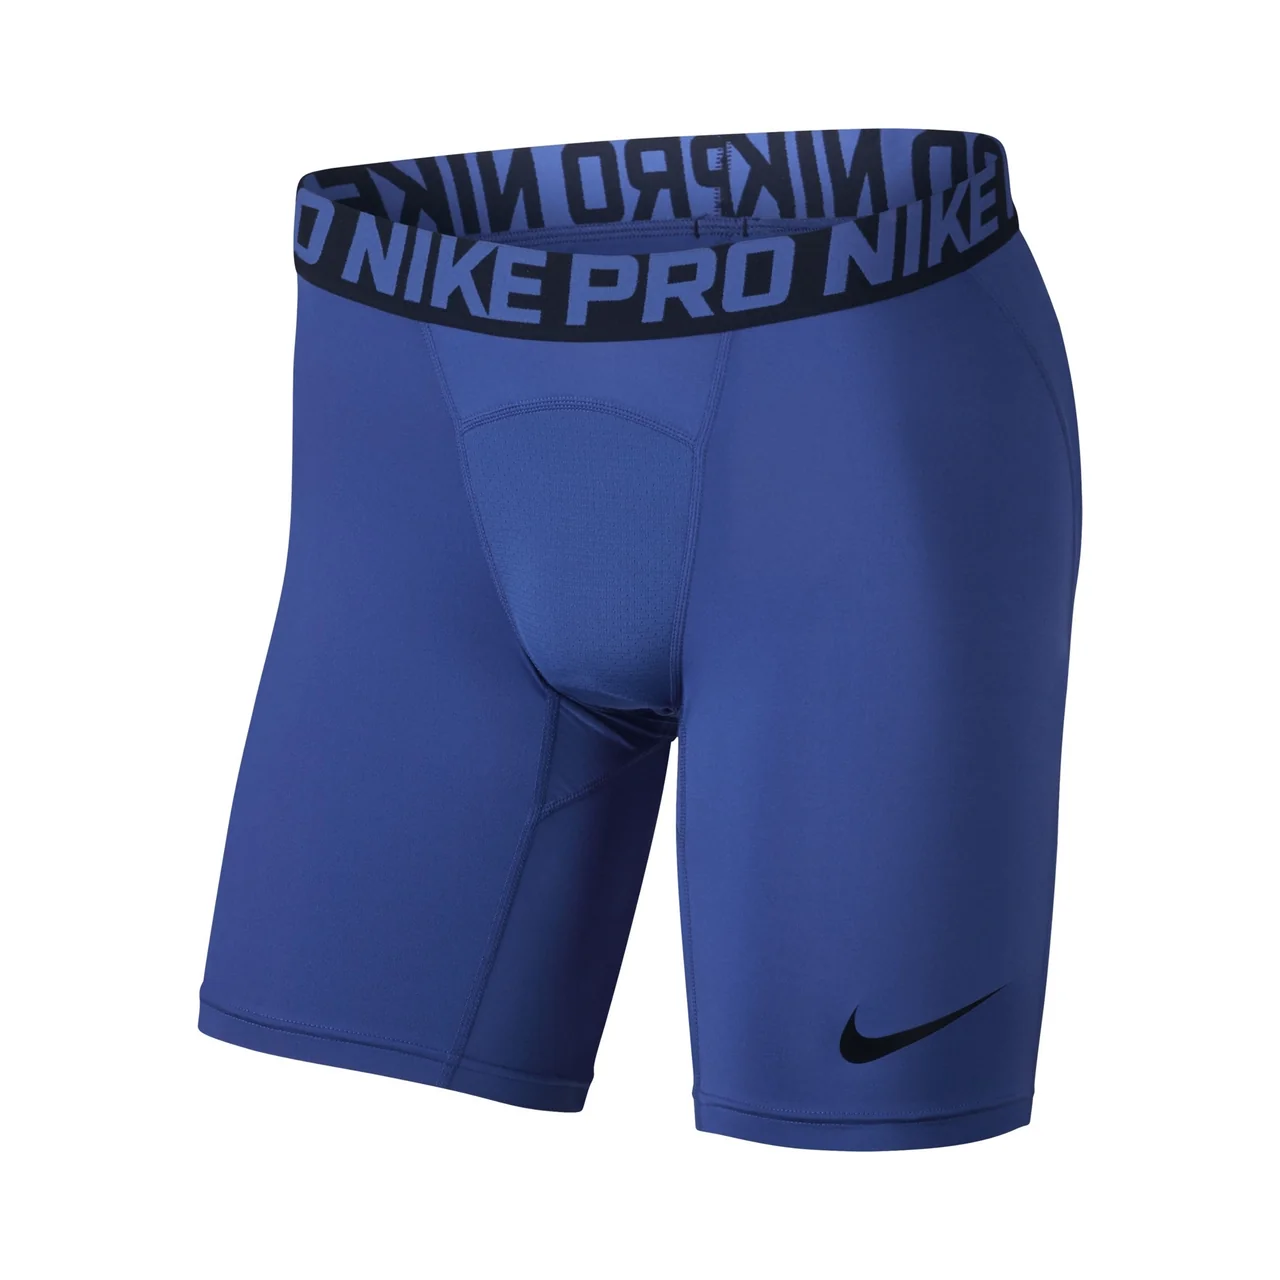 Nike Pro Training Shorts Blue